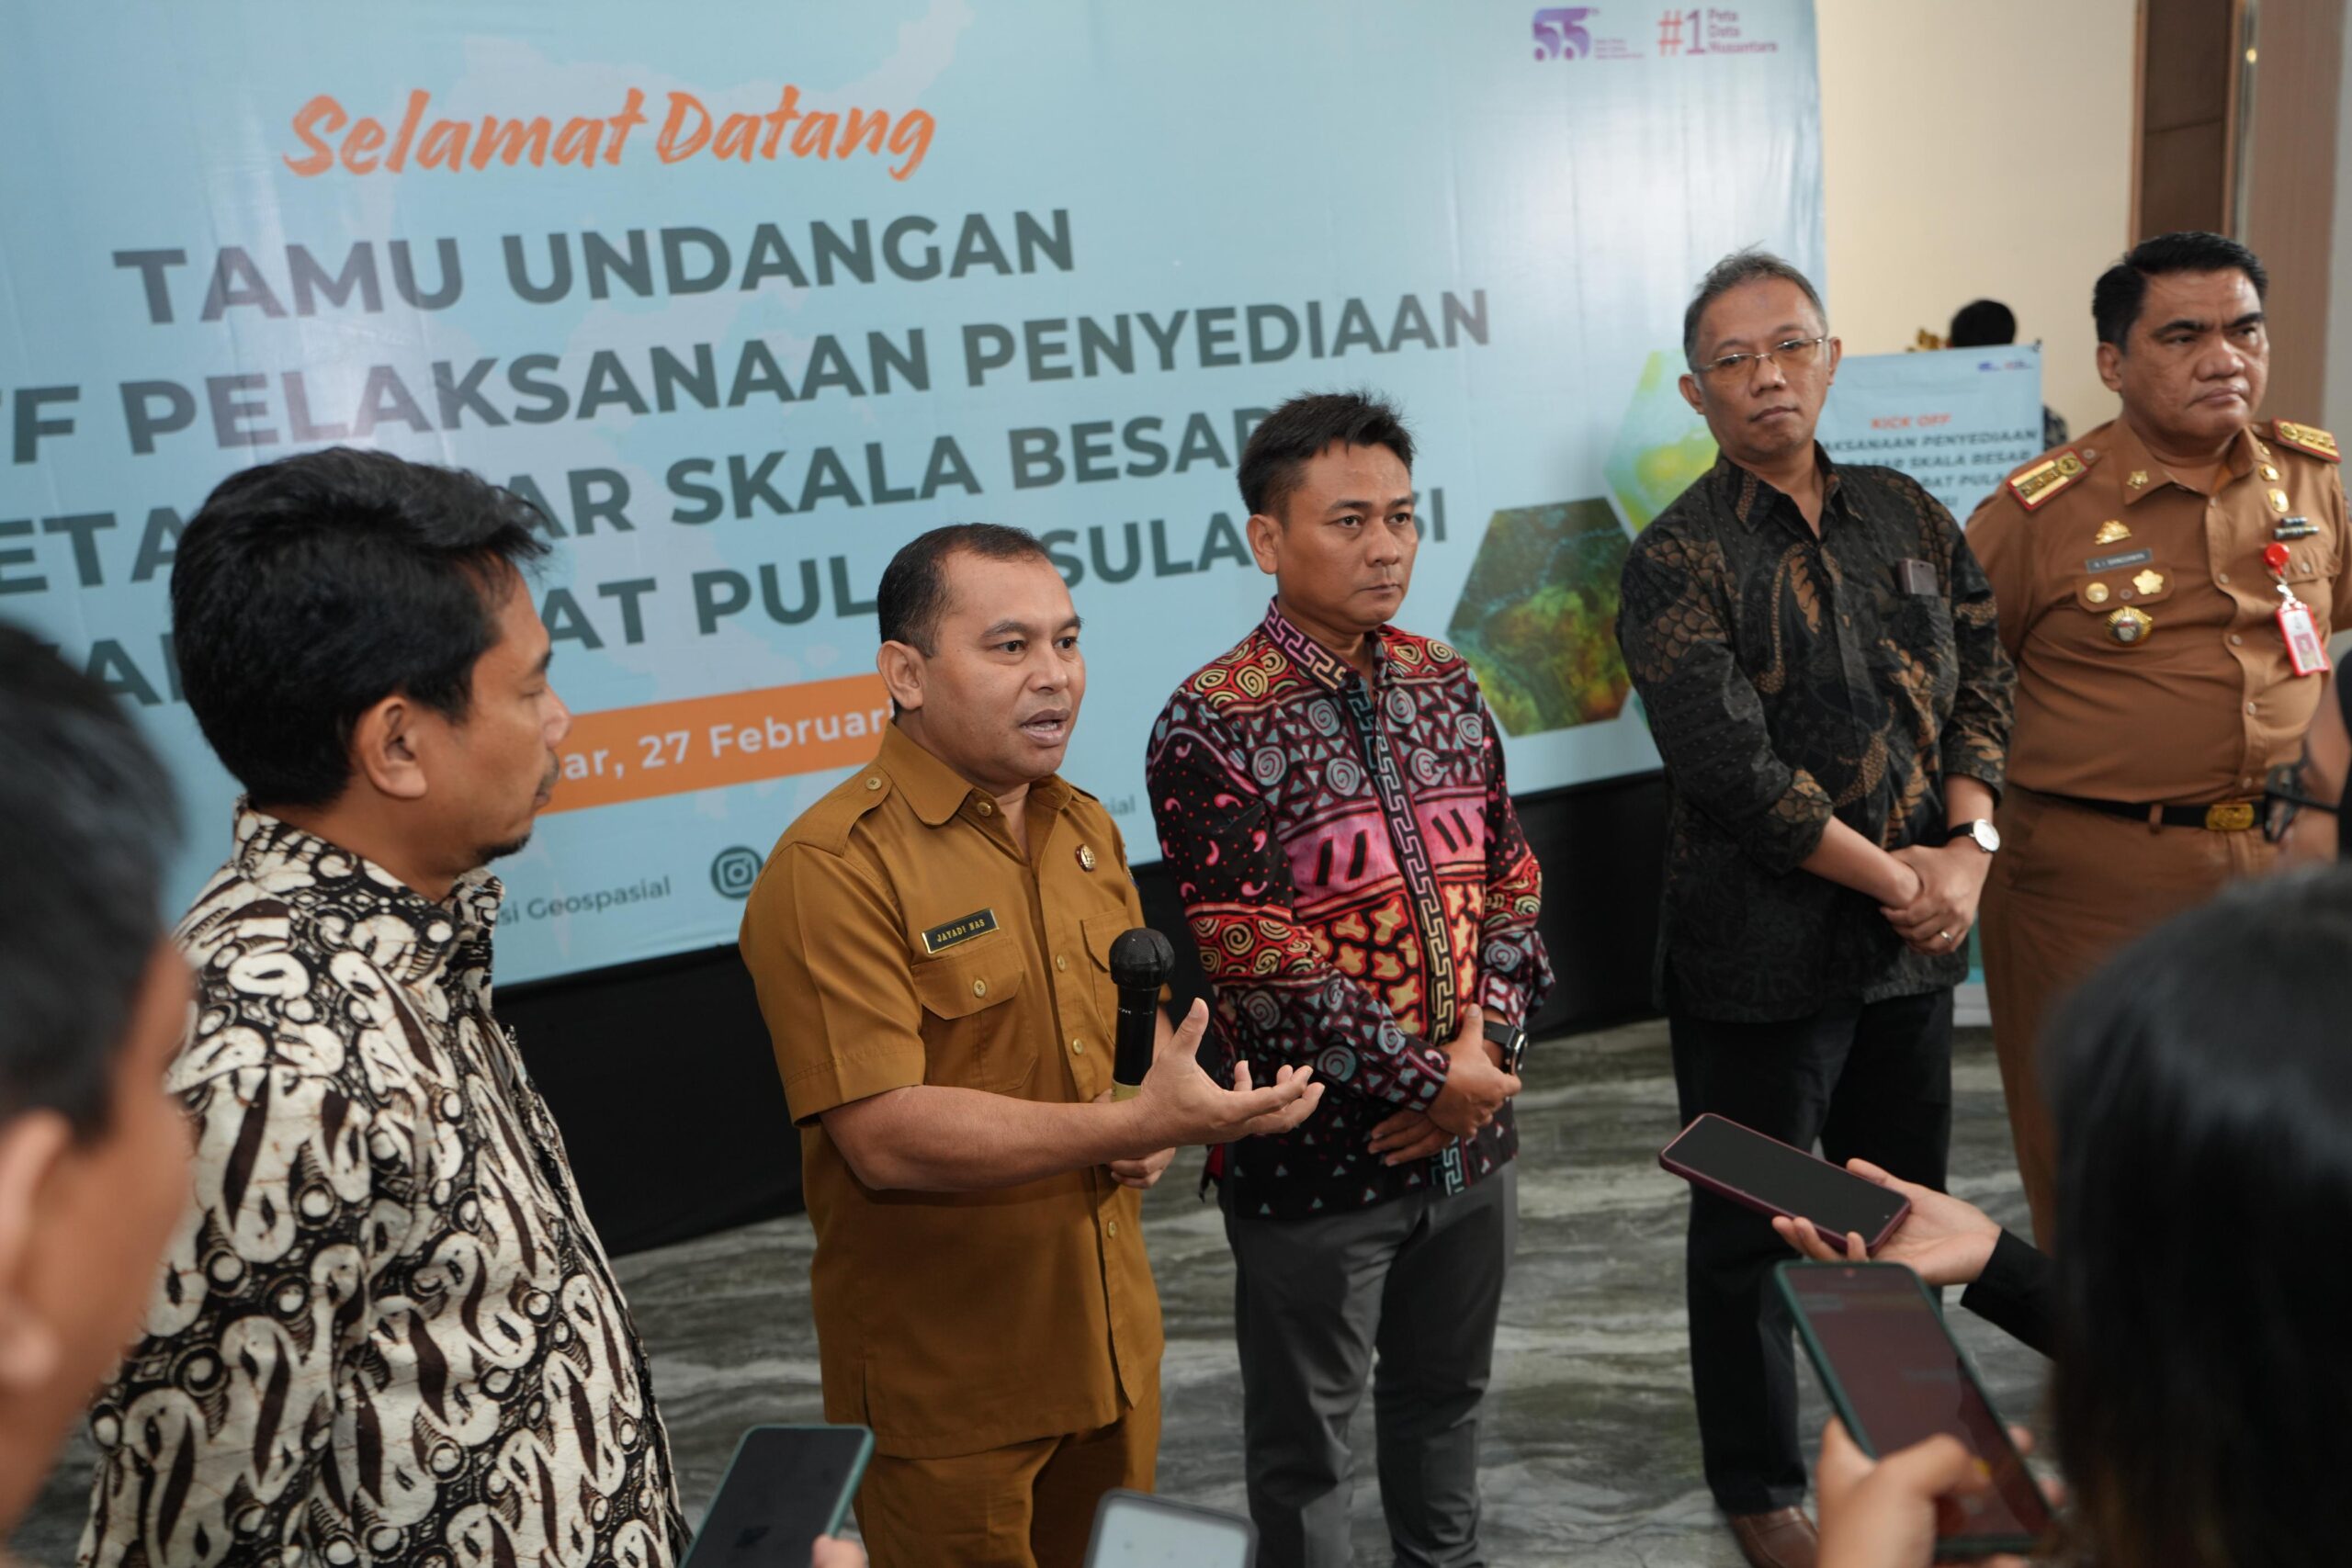 Gelar Sosialisasi, BIG Percepat Pelaksanaan Penyediaan Peta Dasar Skala Besar Wilayah Darat Sulawesi